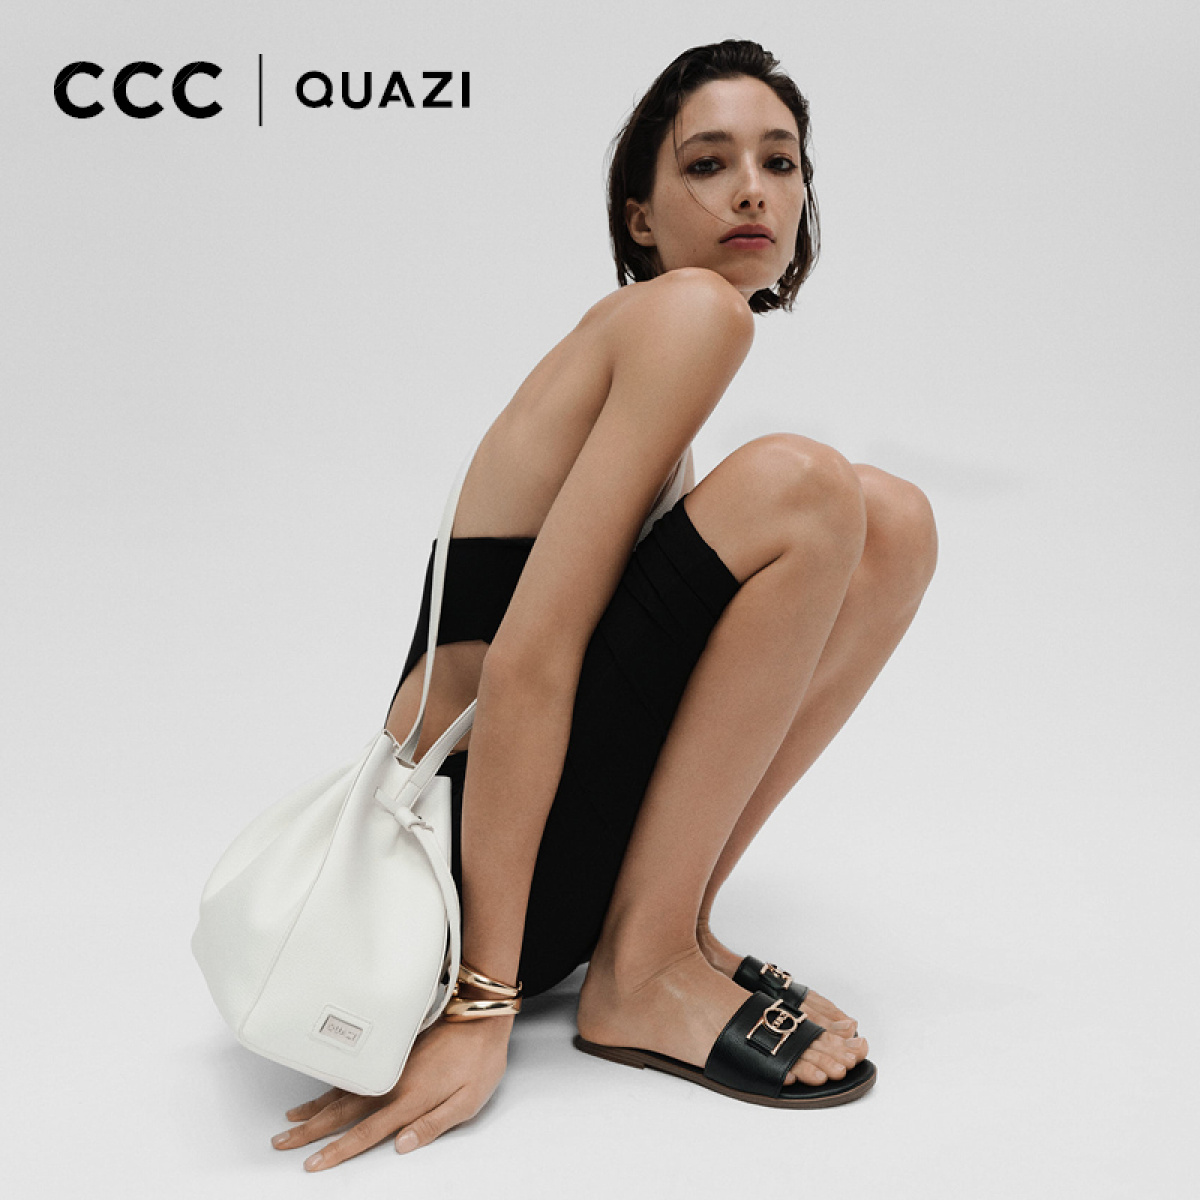 Nowa kolekcja Quazi w sklepach CCC